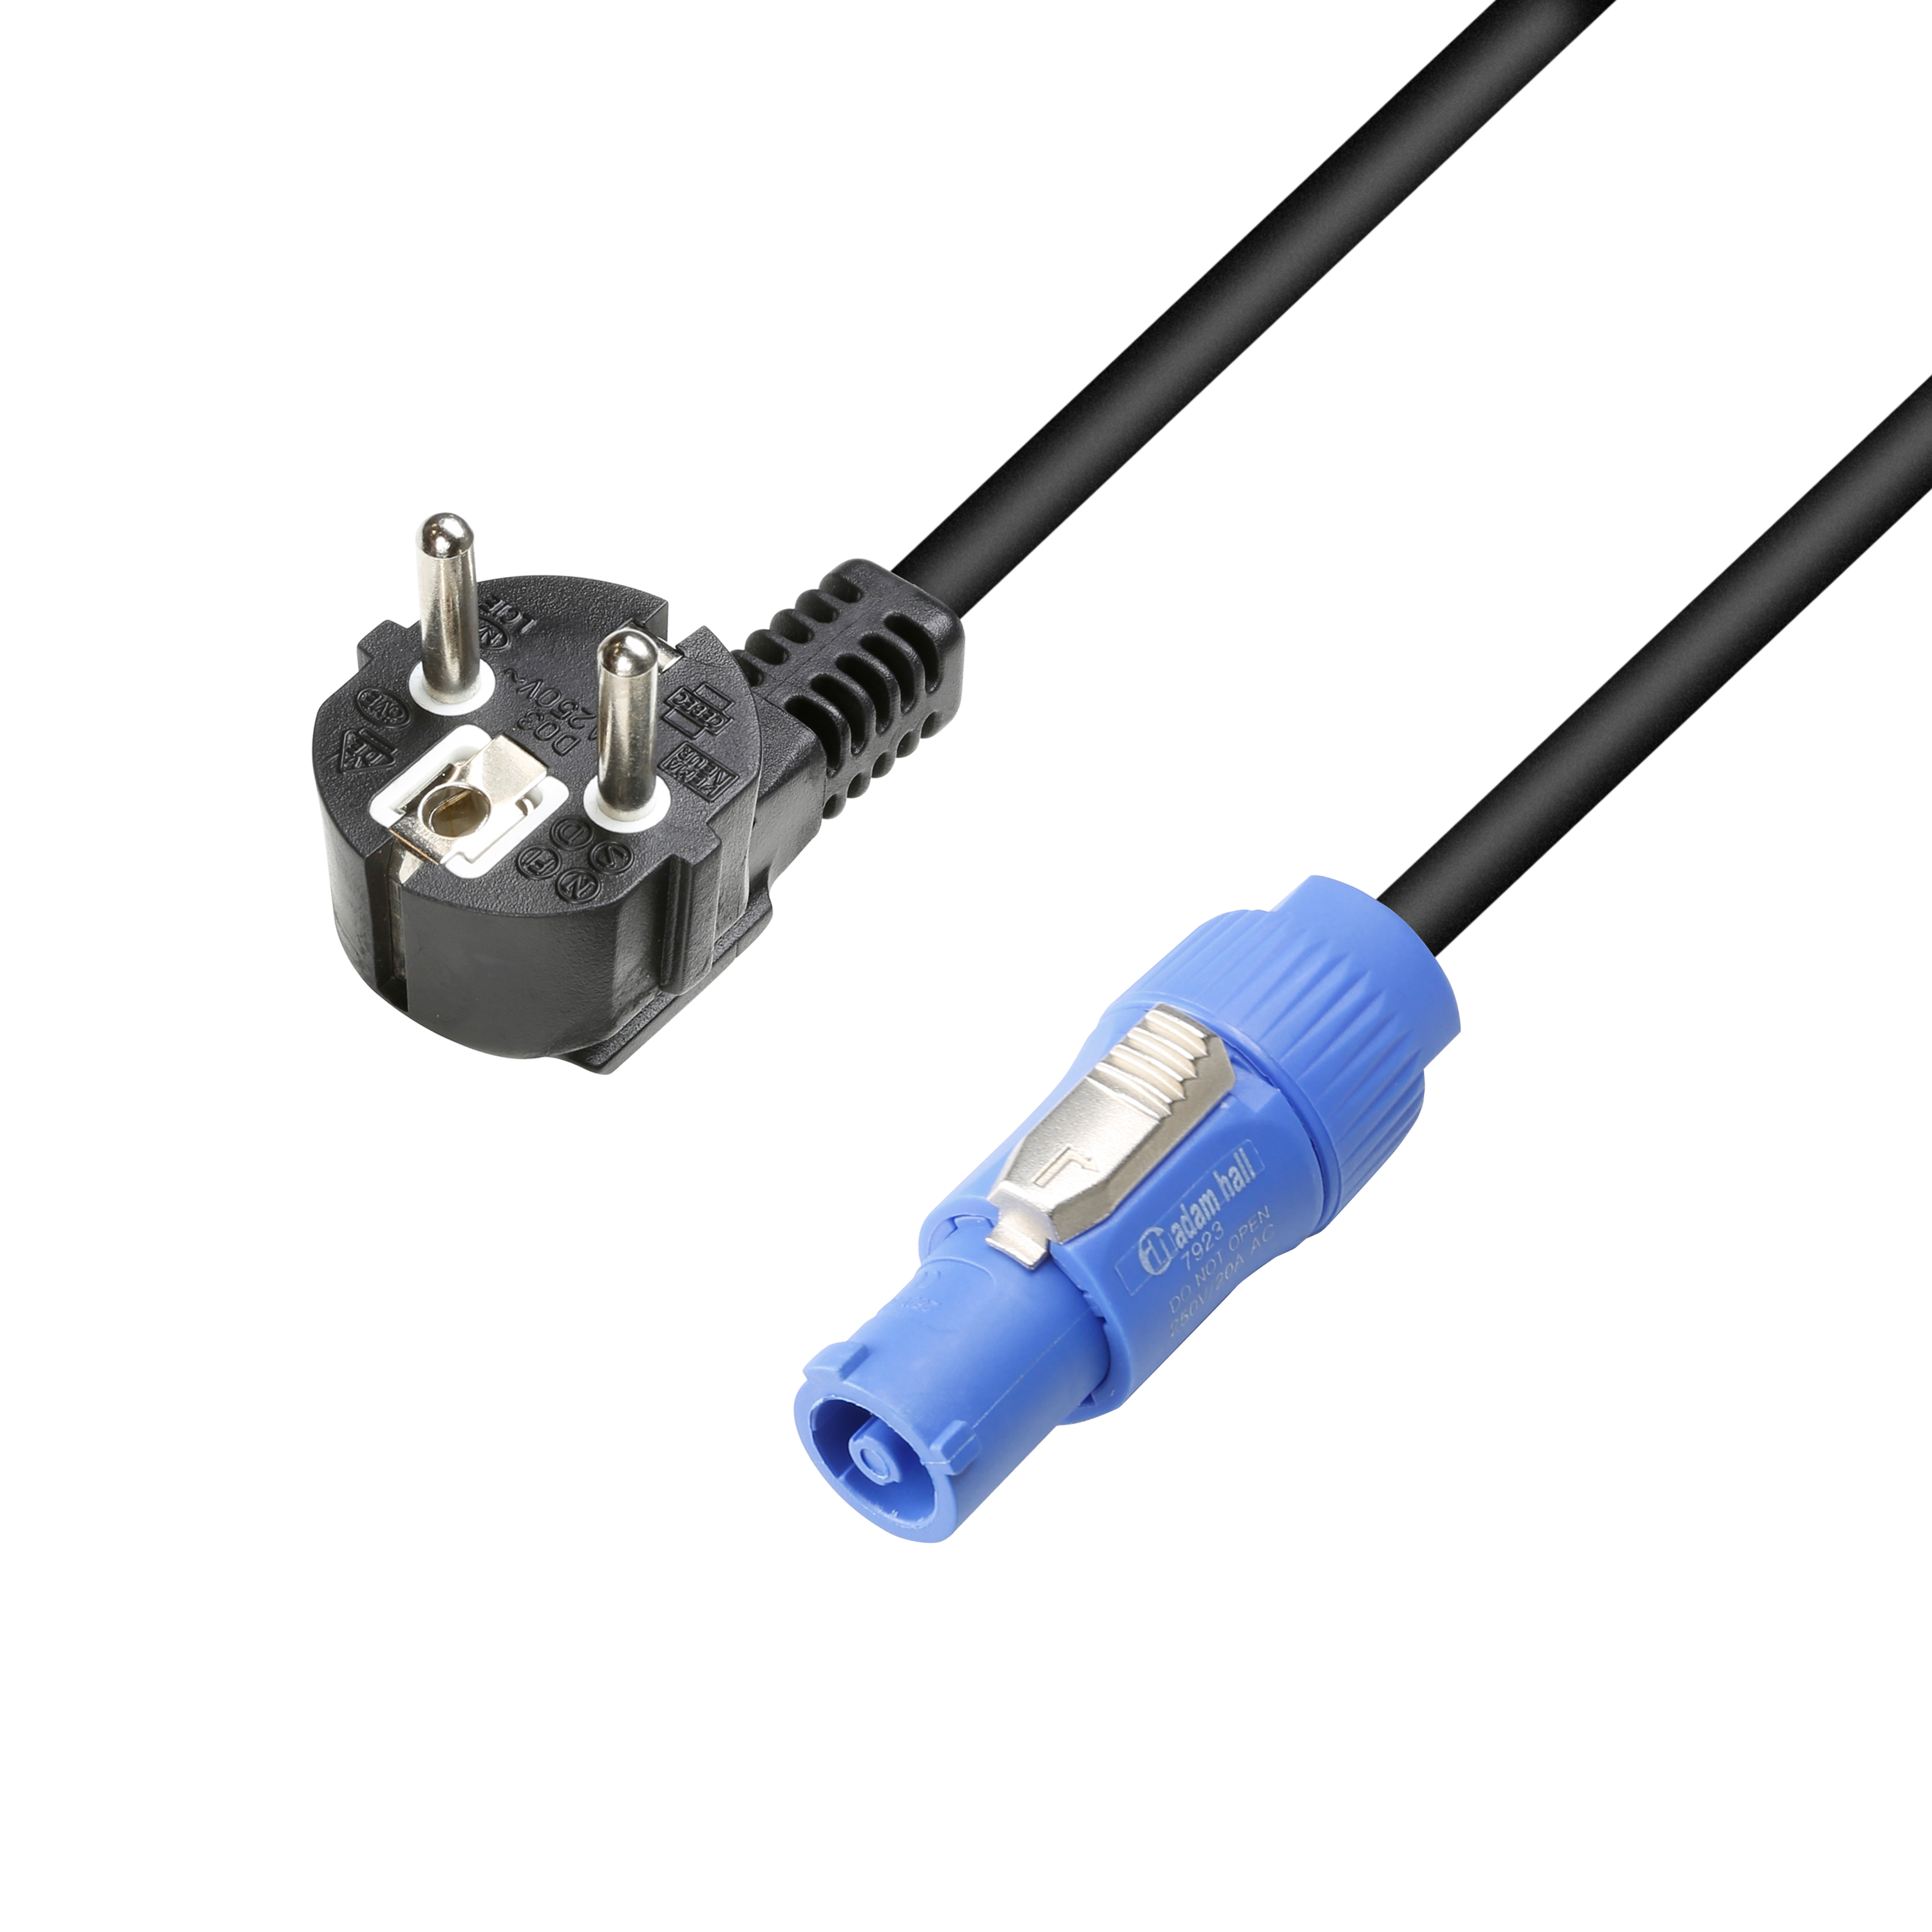 Câble d'alimentation Powercon 3X1,5 mm² longueur 3m